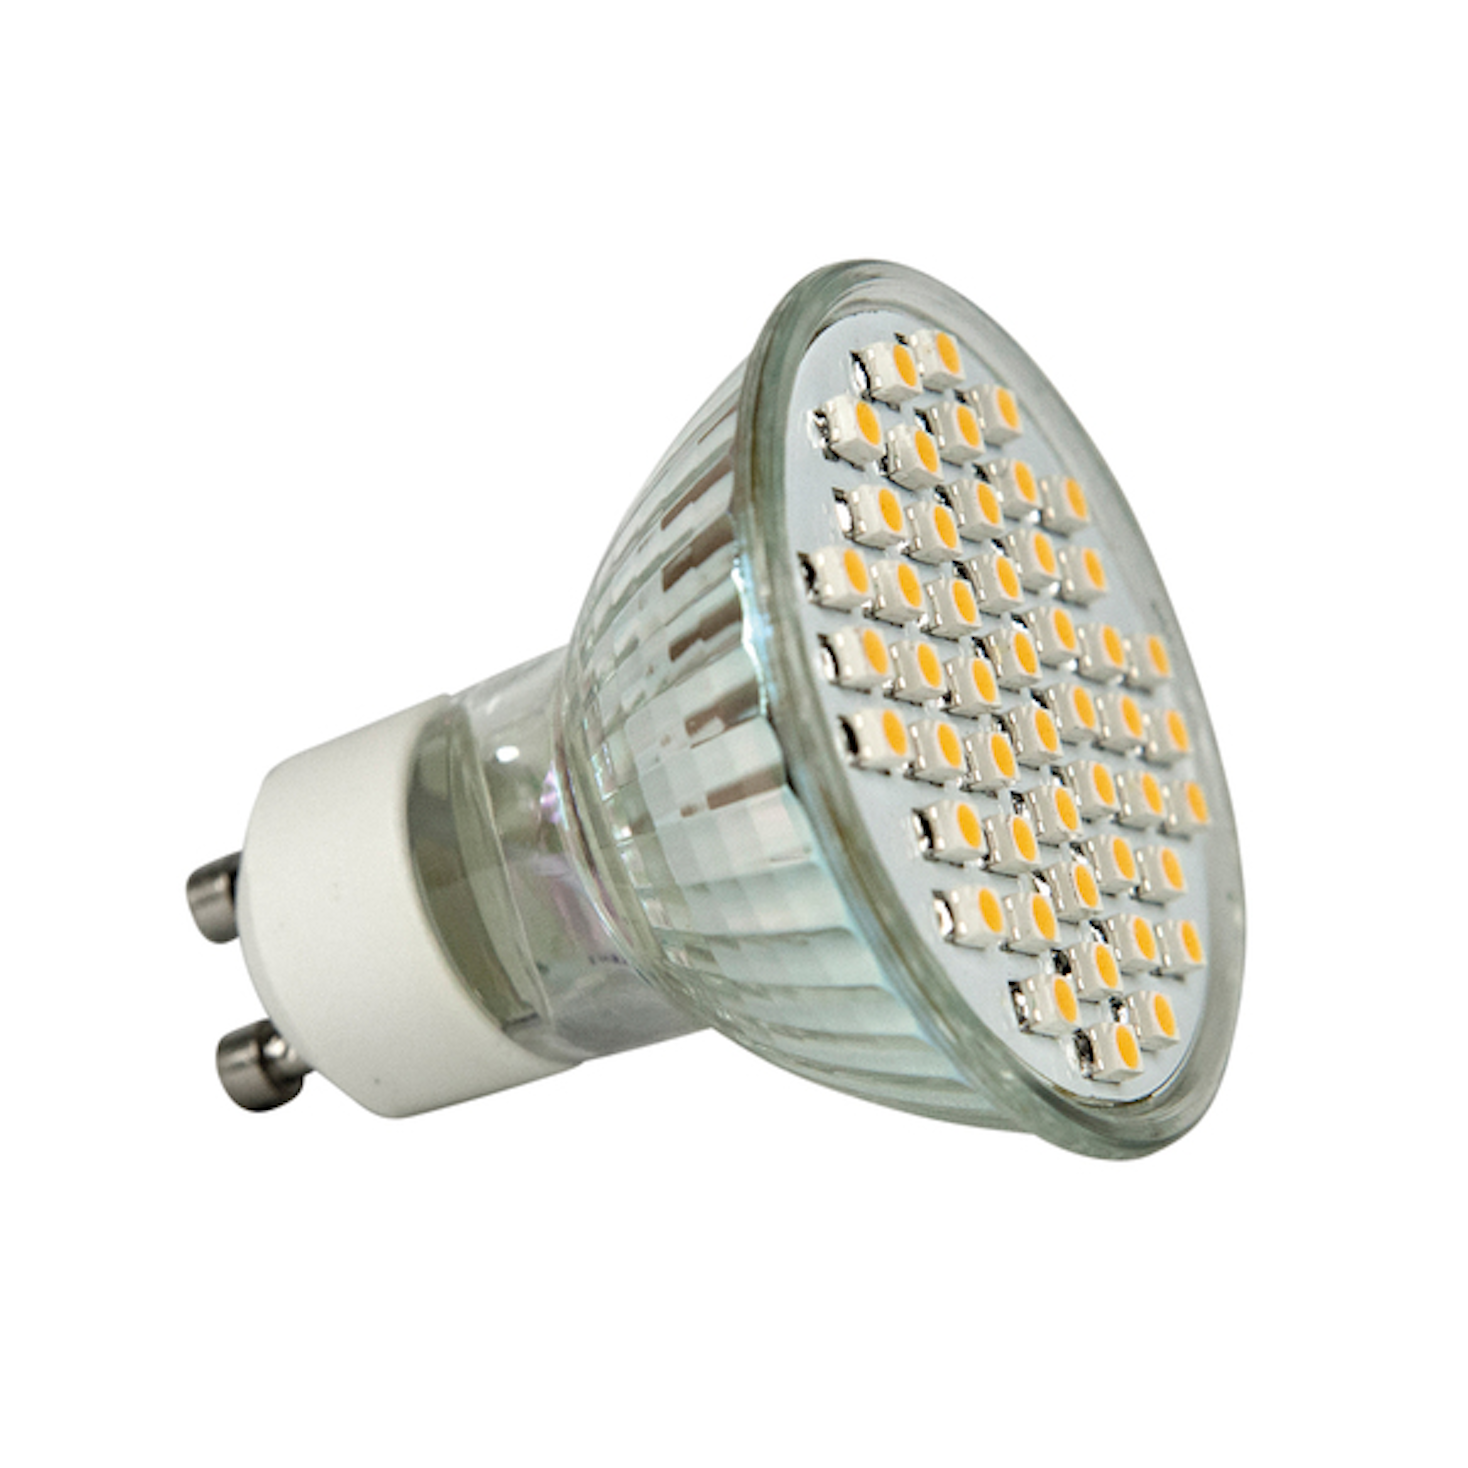 Лампа светодиодная gu 10. Gu10 лампа светодиодная 12вт. Mr16 лампа светодиодная 12 вольт. Светодиодные лампы 12 вольт gu10. Gu10 12v.